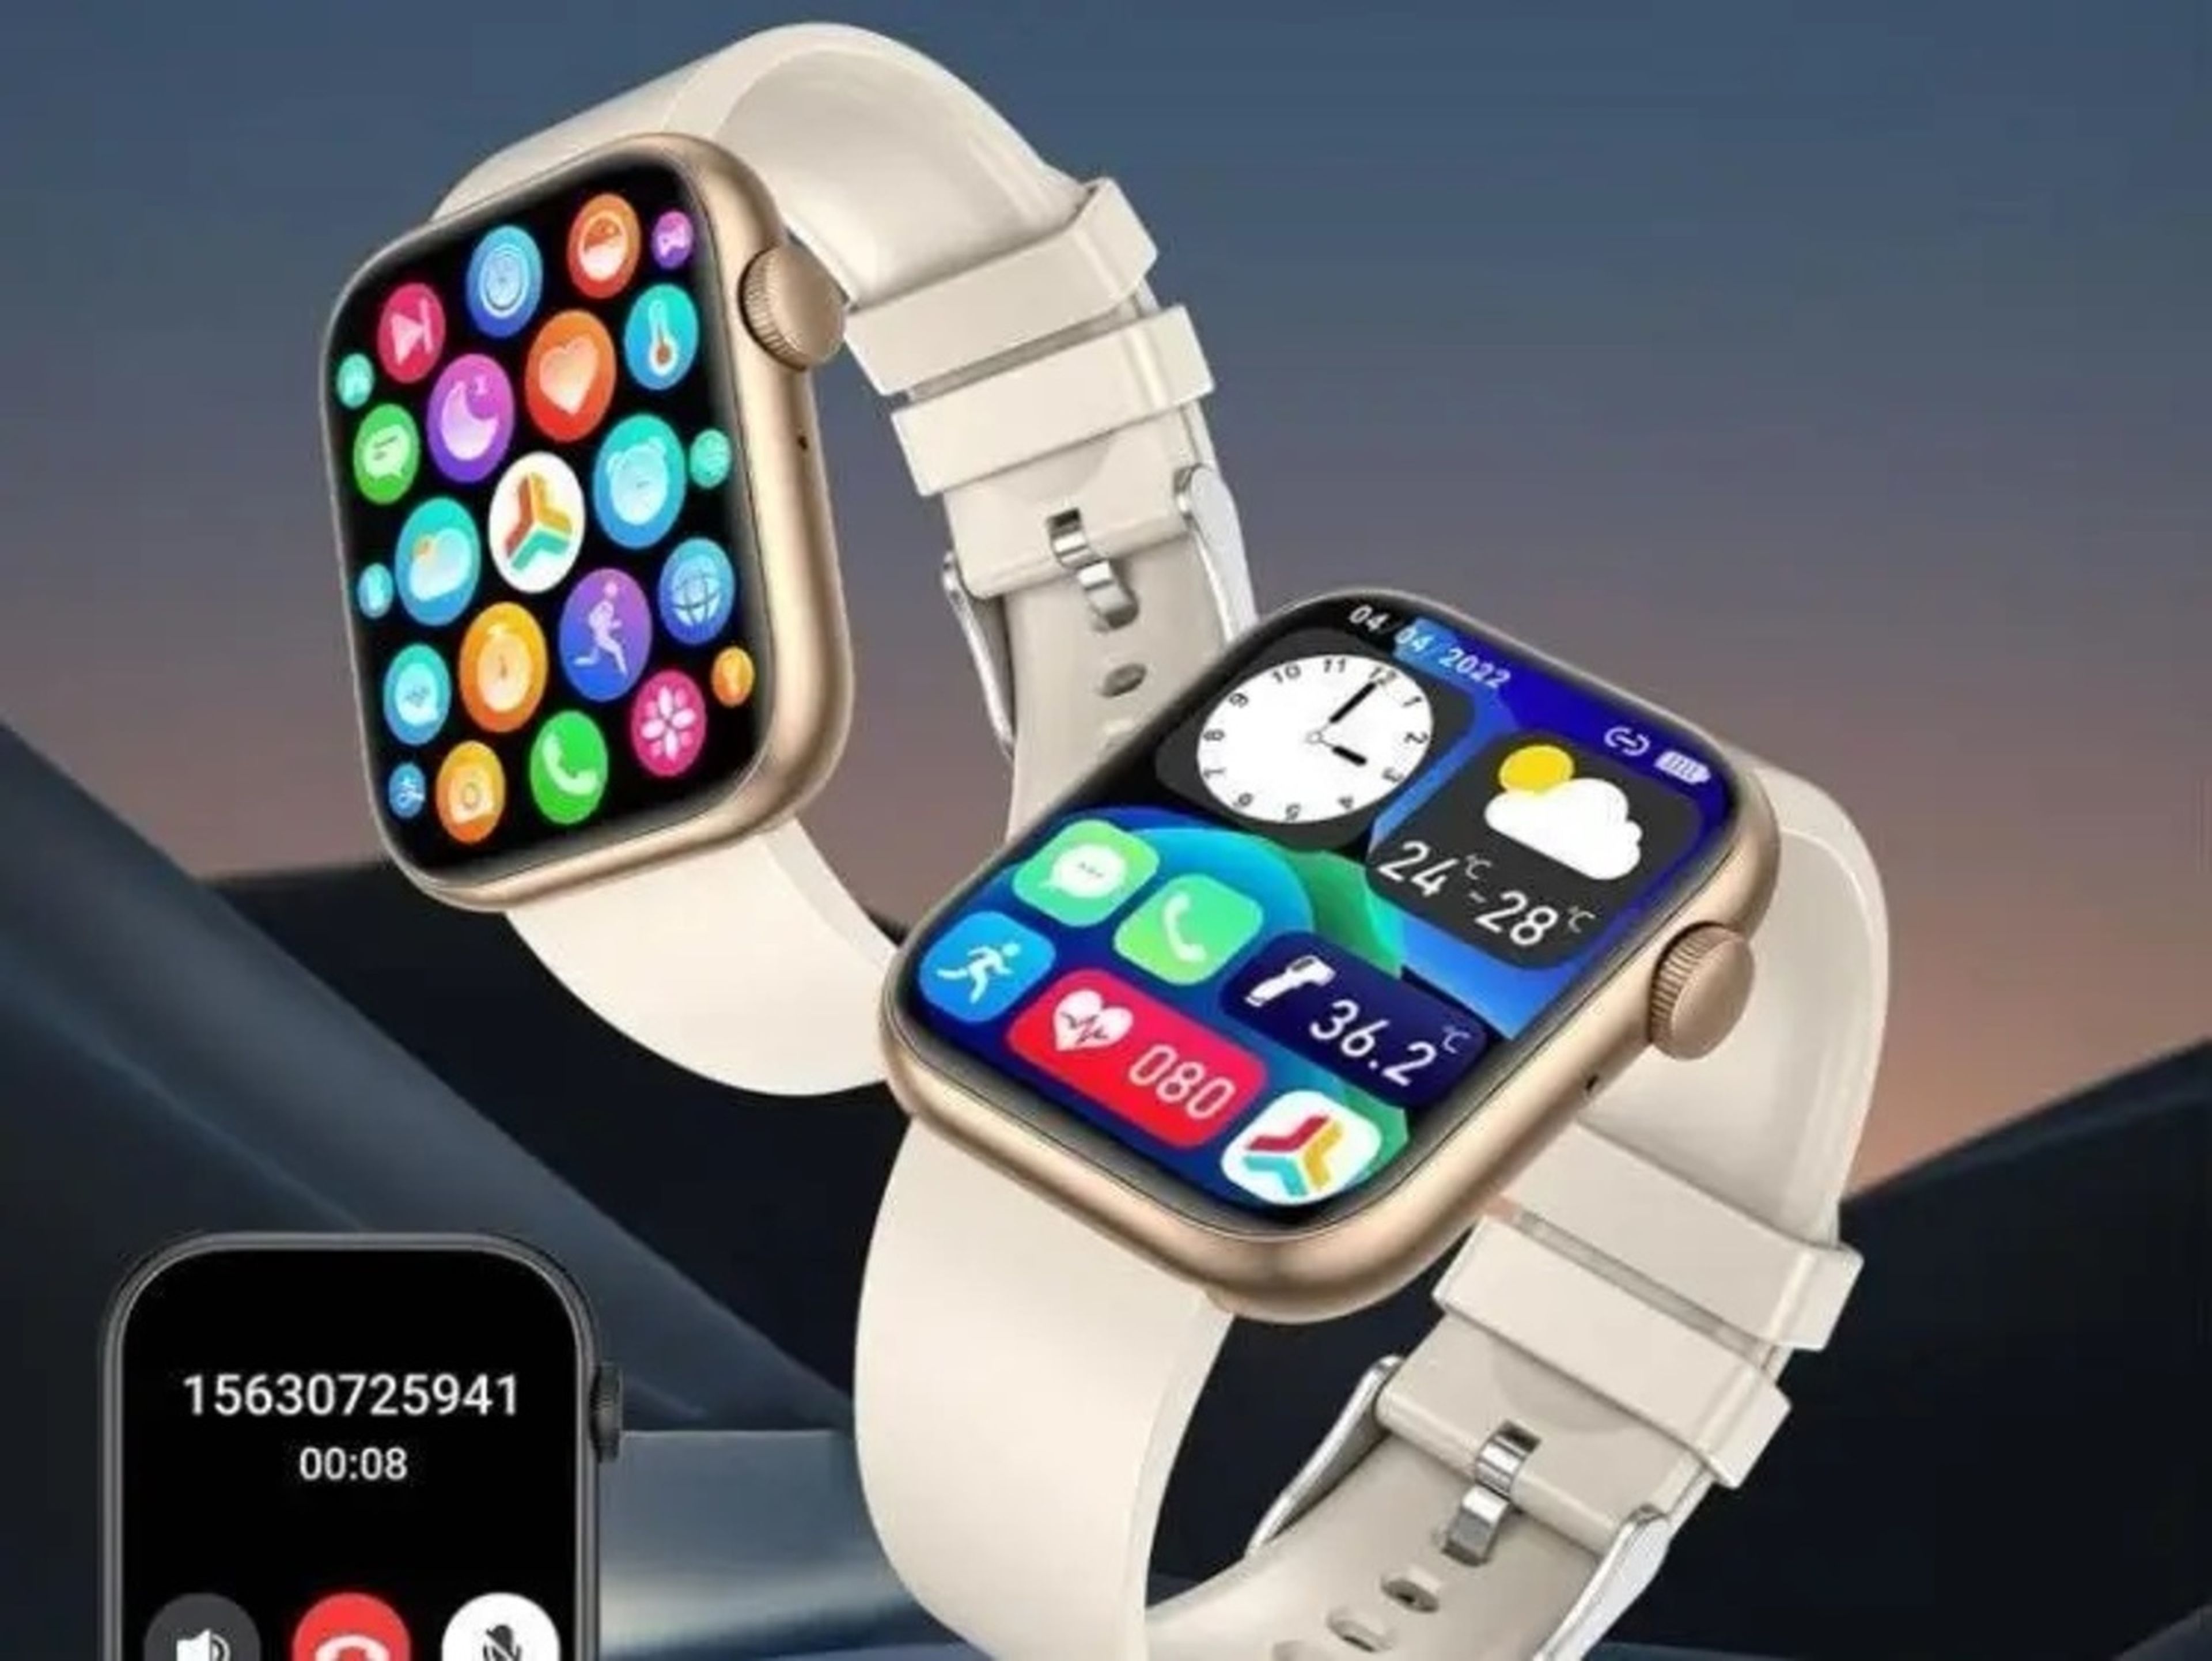 Una influencer subió un vídeo a TikTok promocionando "la venta flash más alocada" de un "Apple Watch viral" por poco menos de 8 euros.